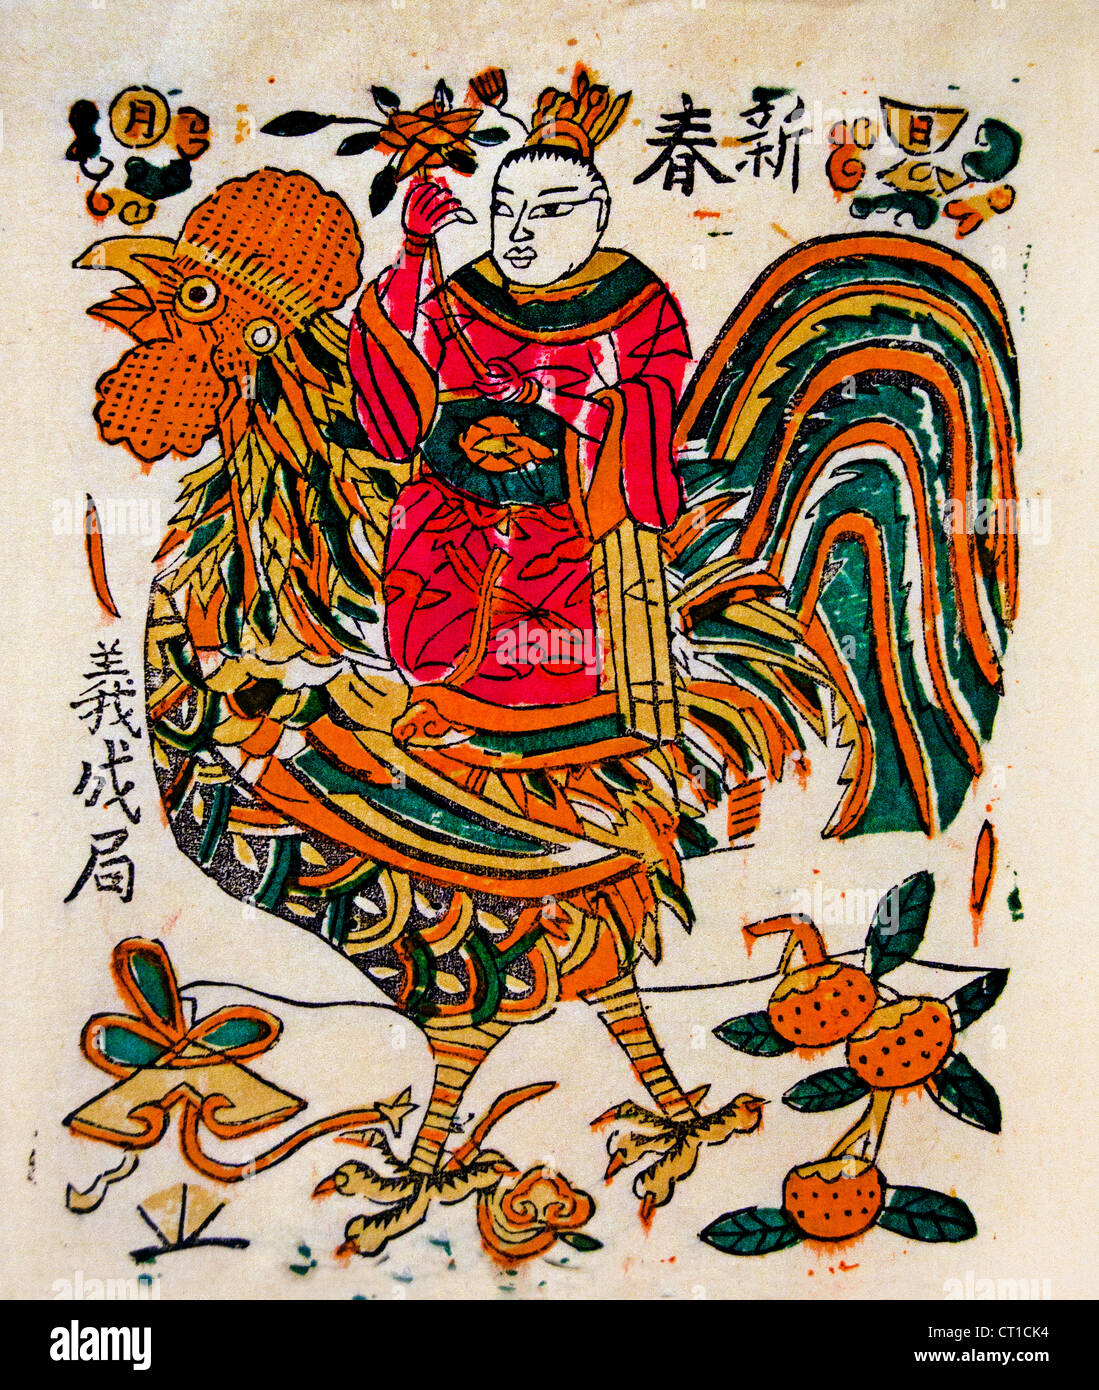 Nouveau ressort Qing au début du 20e siècle gravure sur bois couleur sur papier Chine chinois Banque D'Images